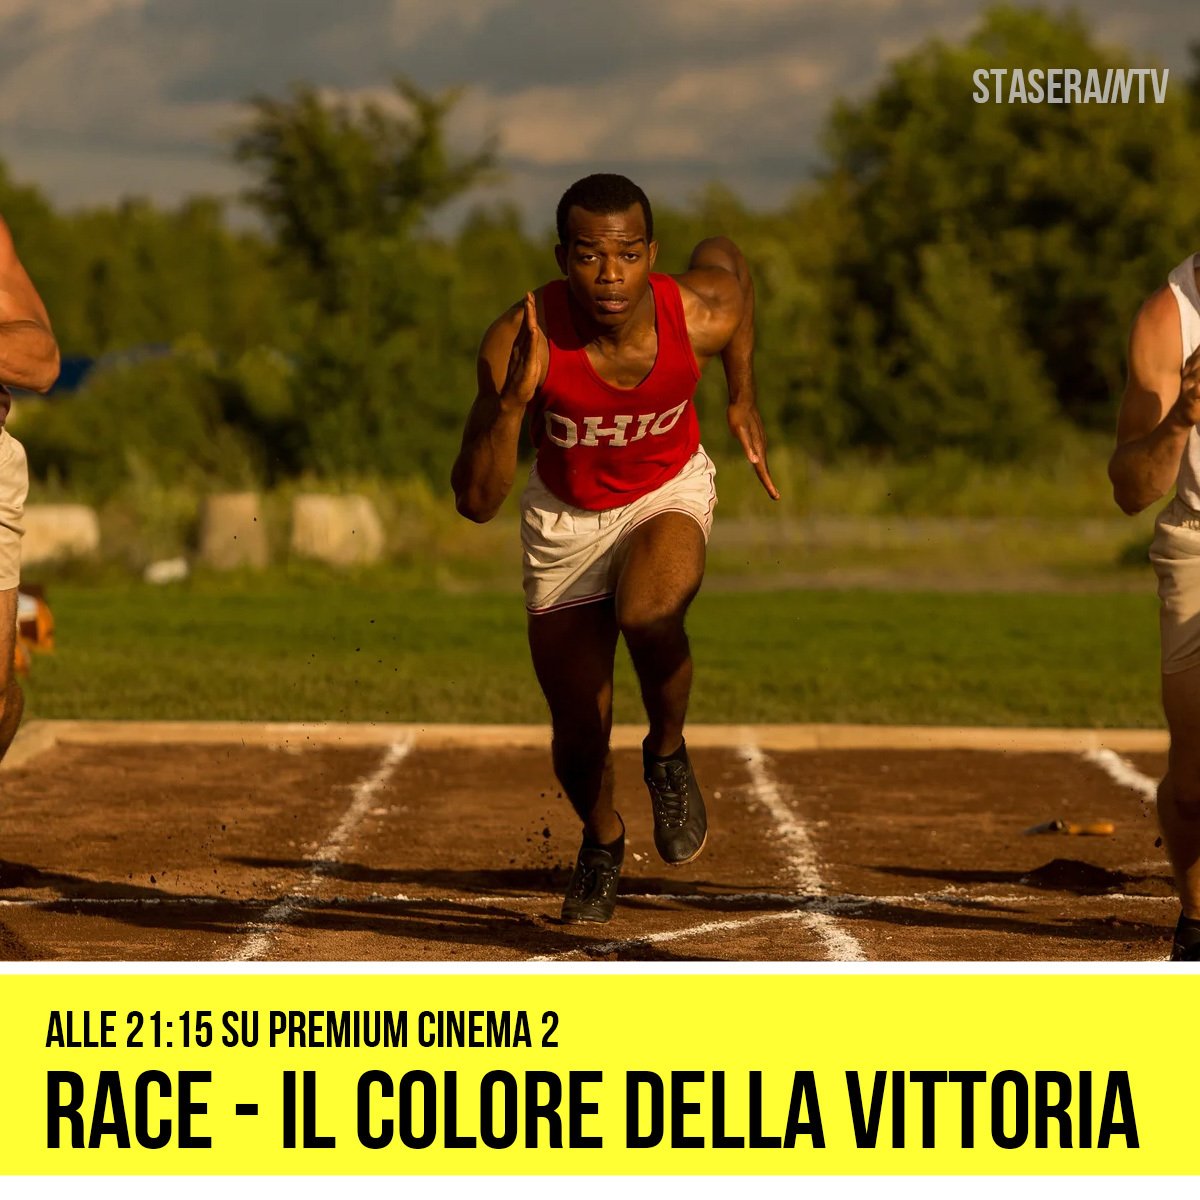 Race - Il colore della vittoria alle 21:15 Premium Cinema 2